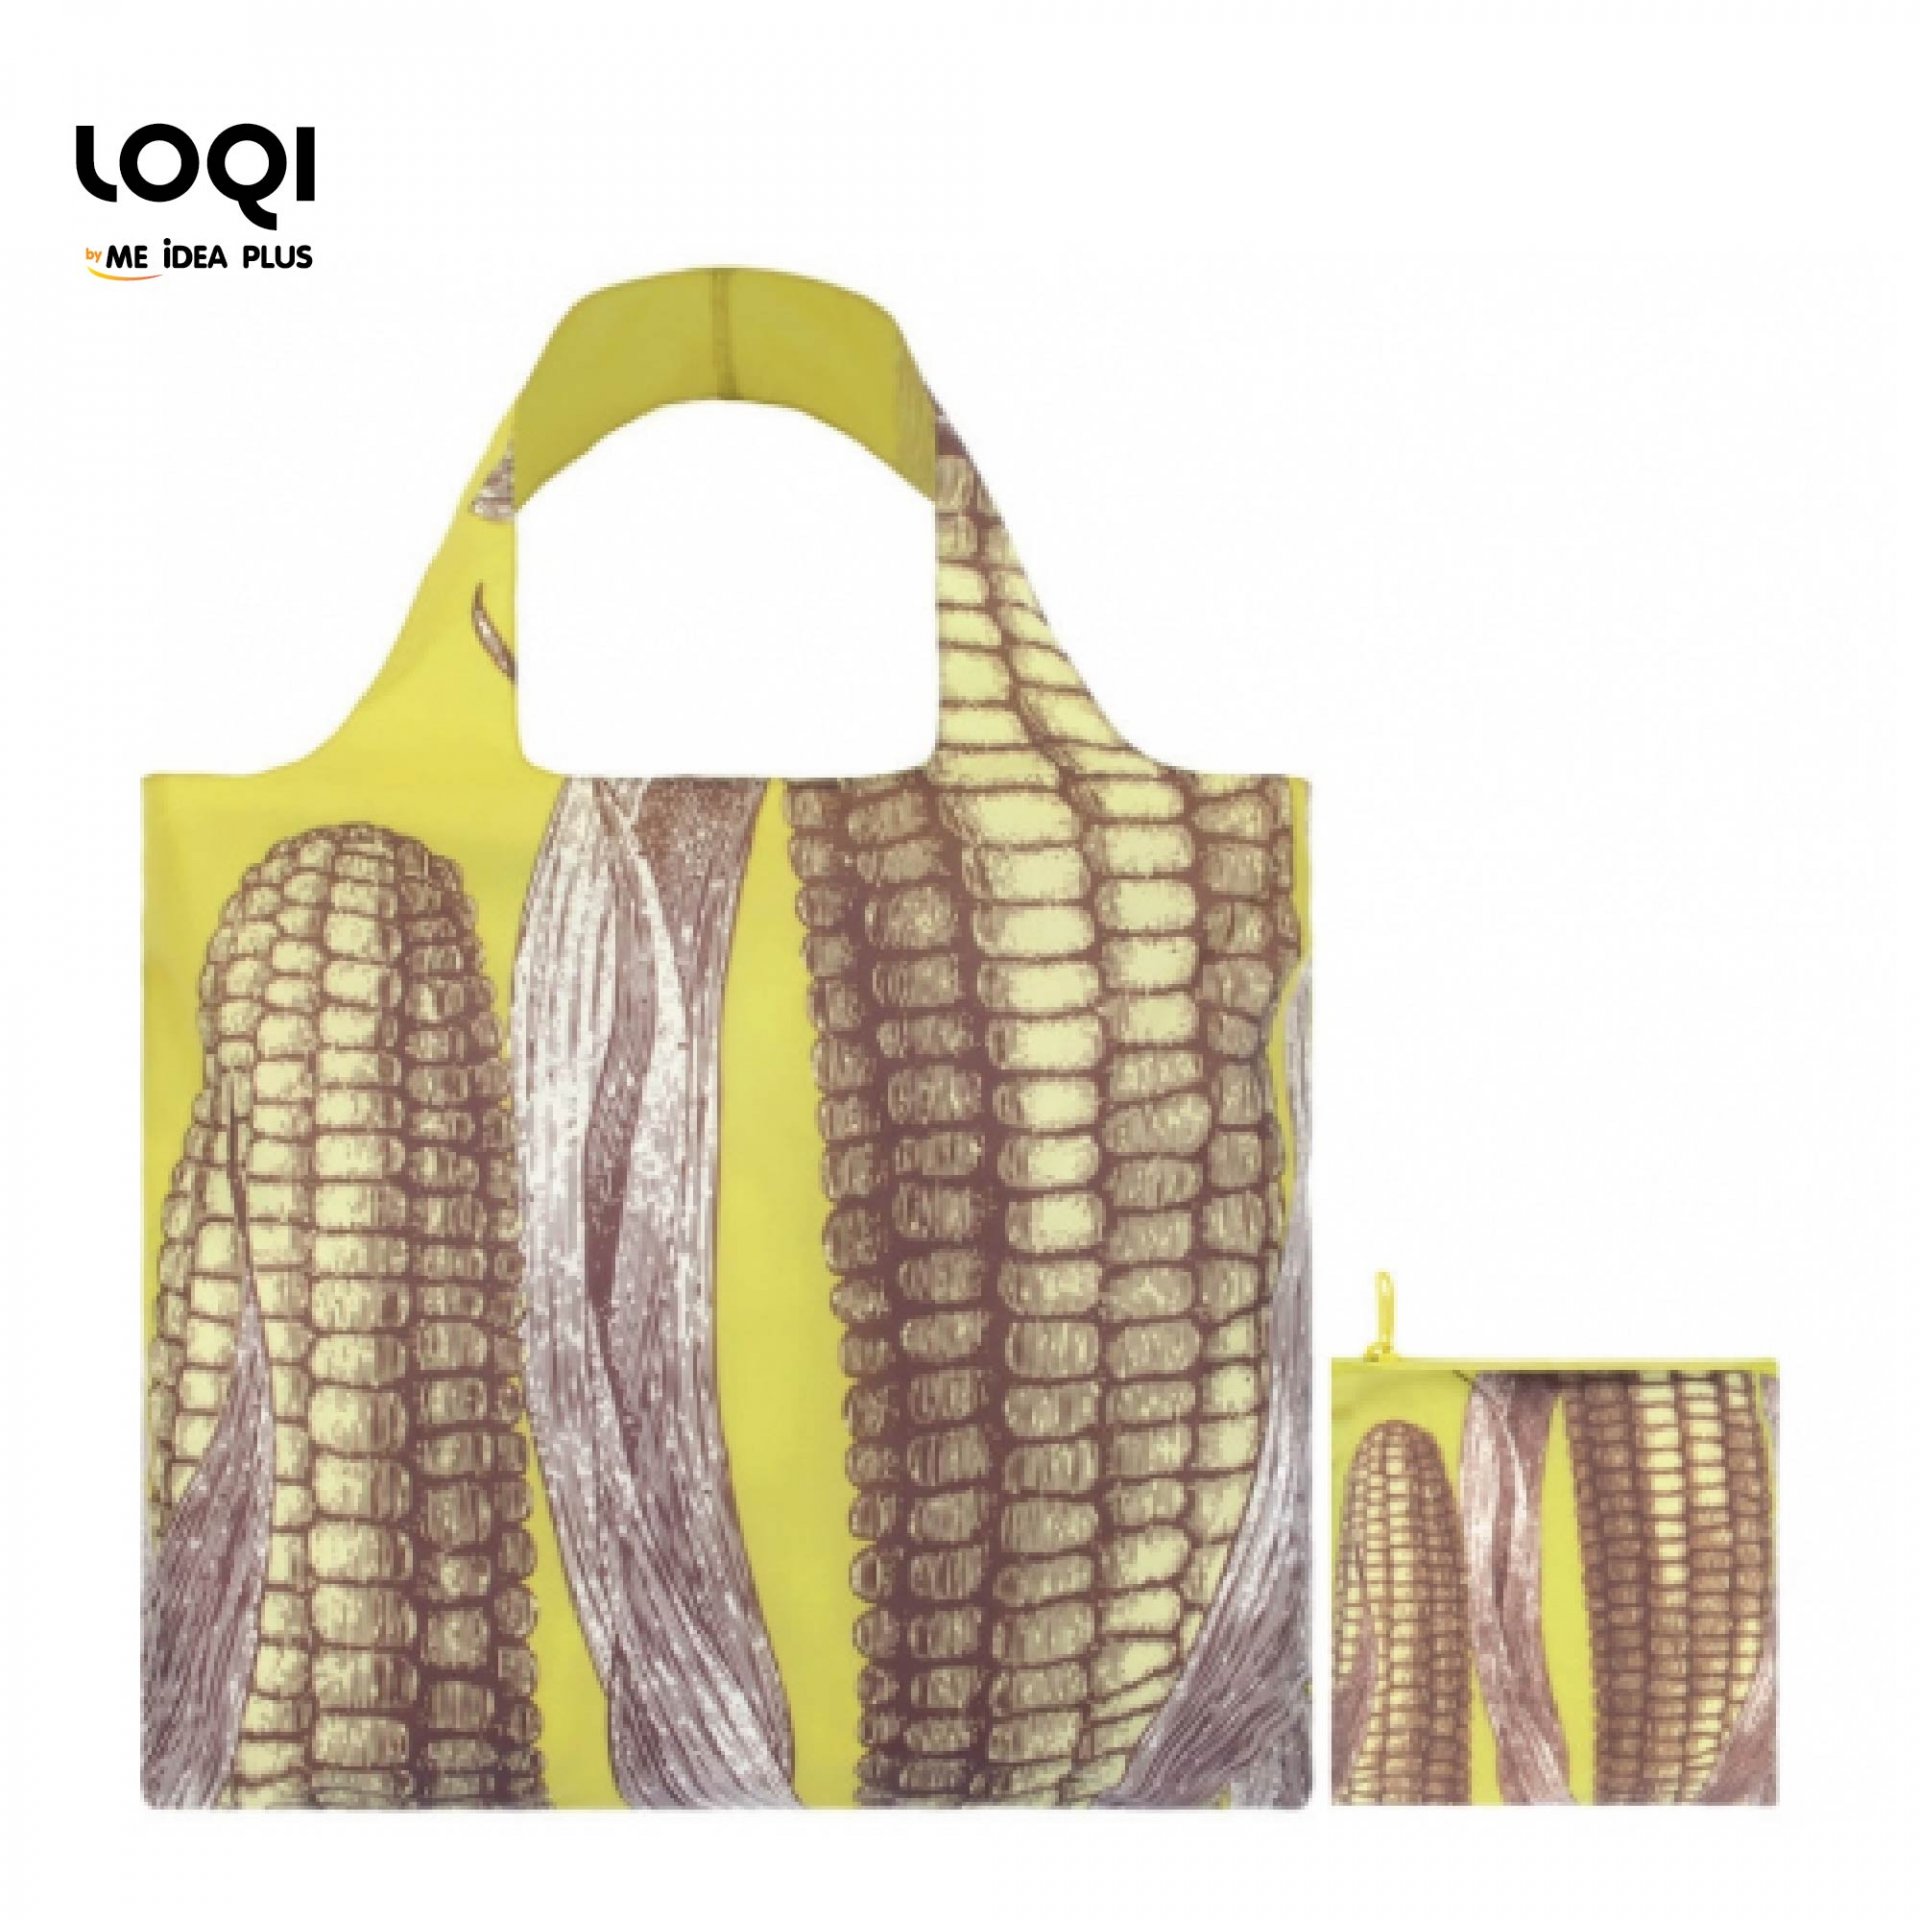 กระเป๋าผ้าแฟชั่นแบรนด์LOQI รุ่น Maize ใบใหญ่1ใบ+ใบเล็ก1ใบ